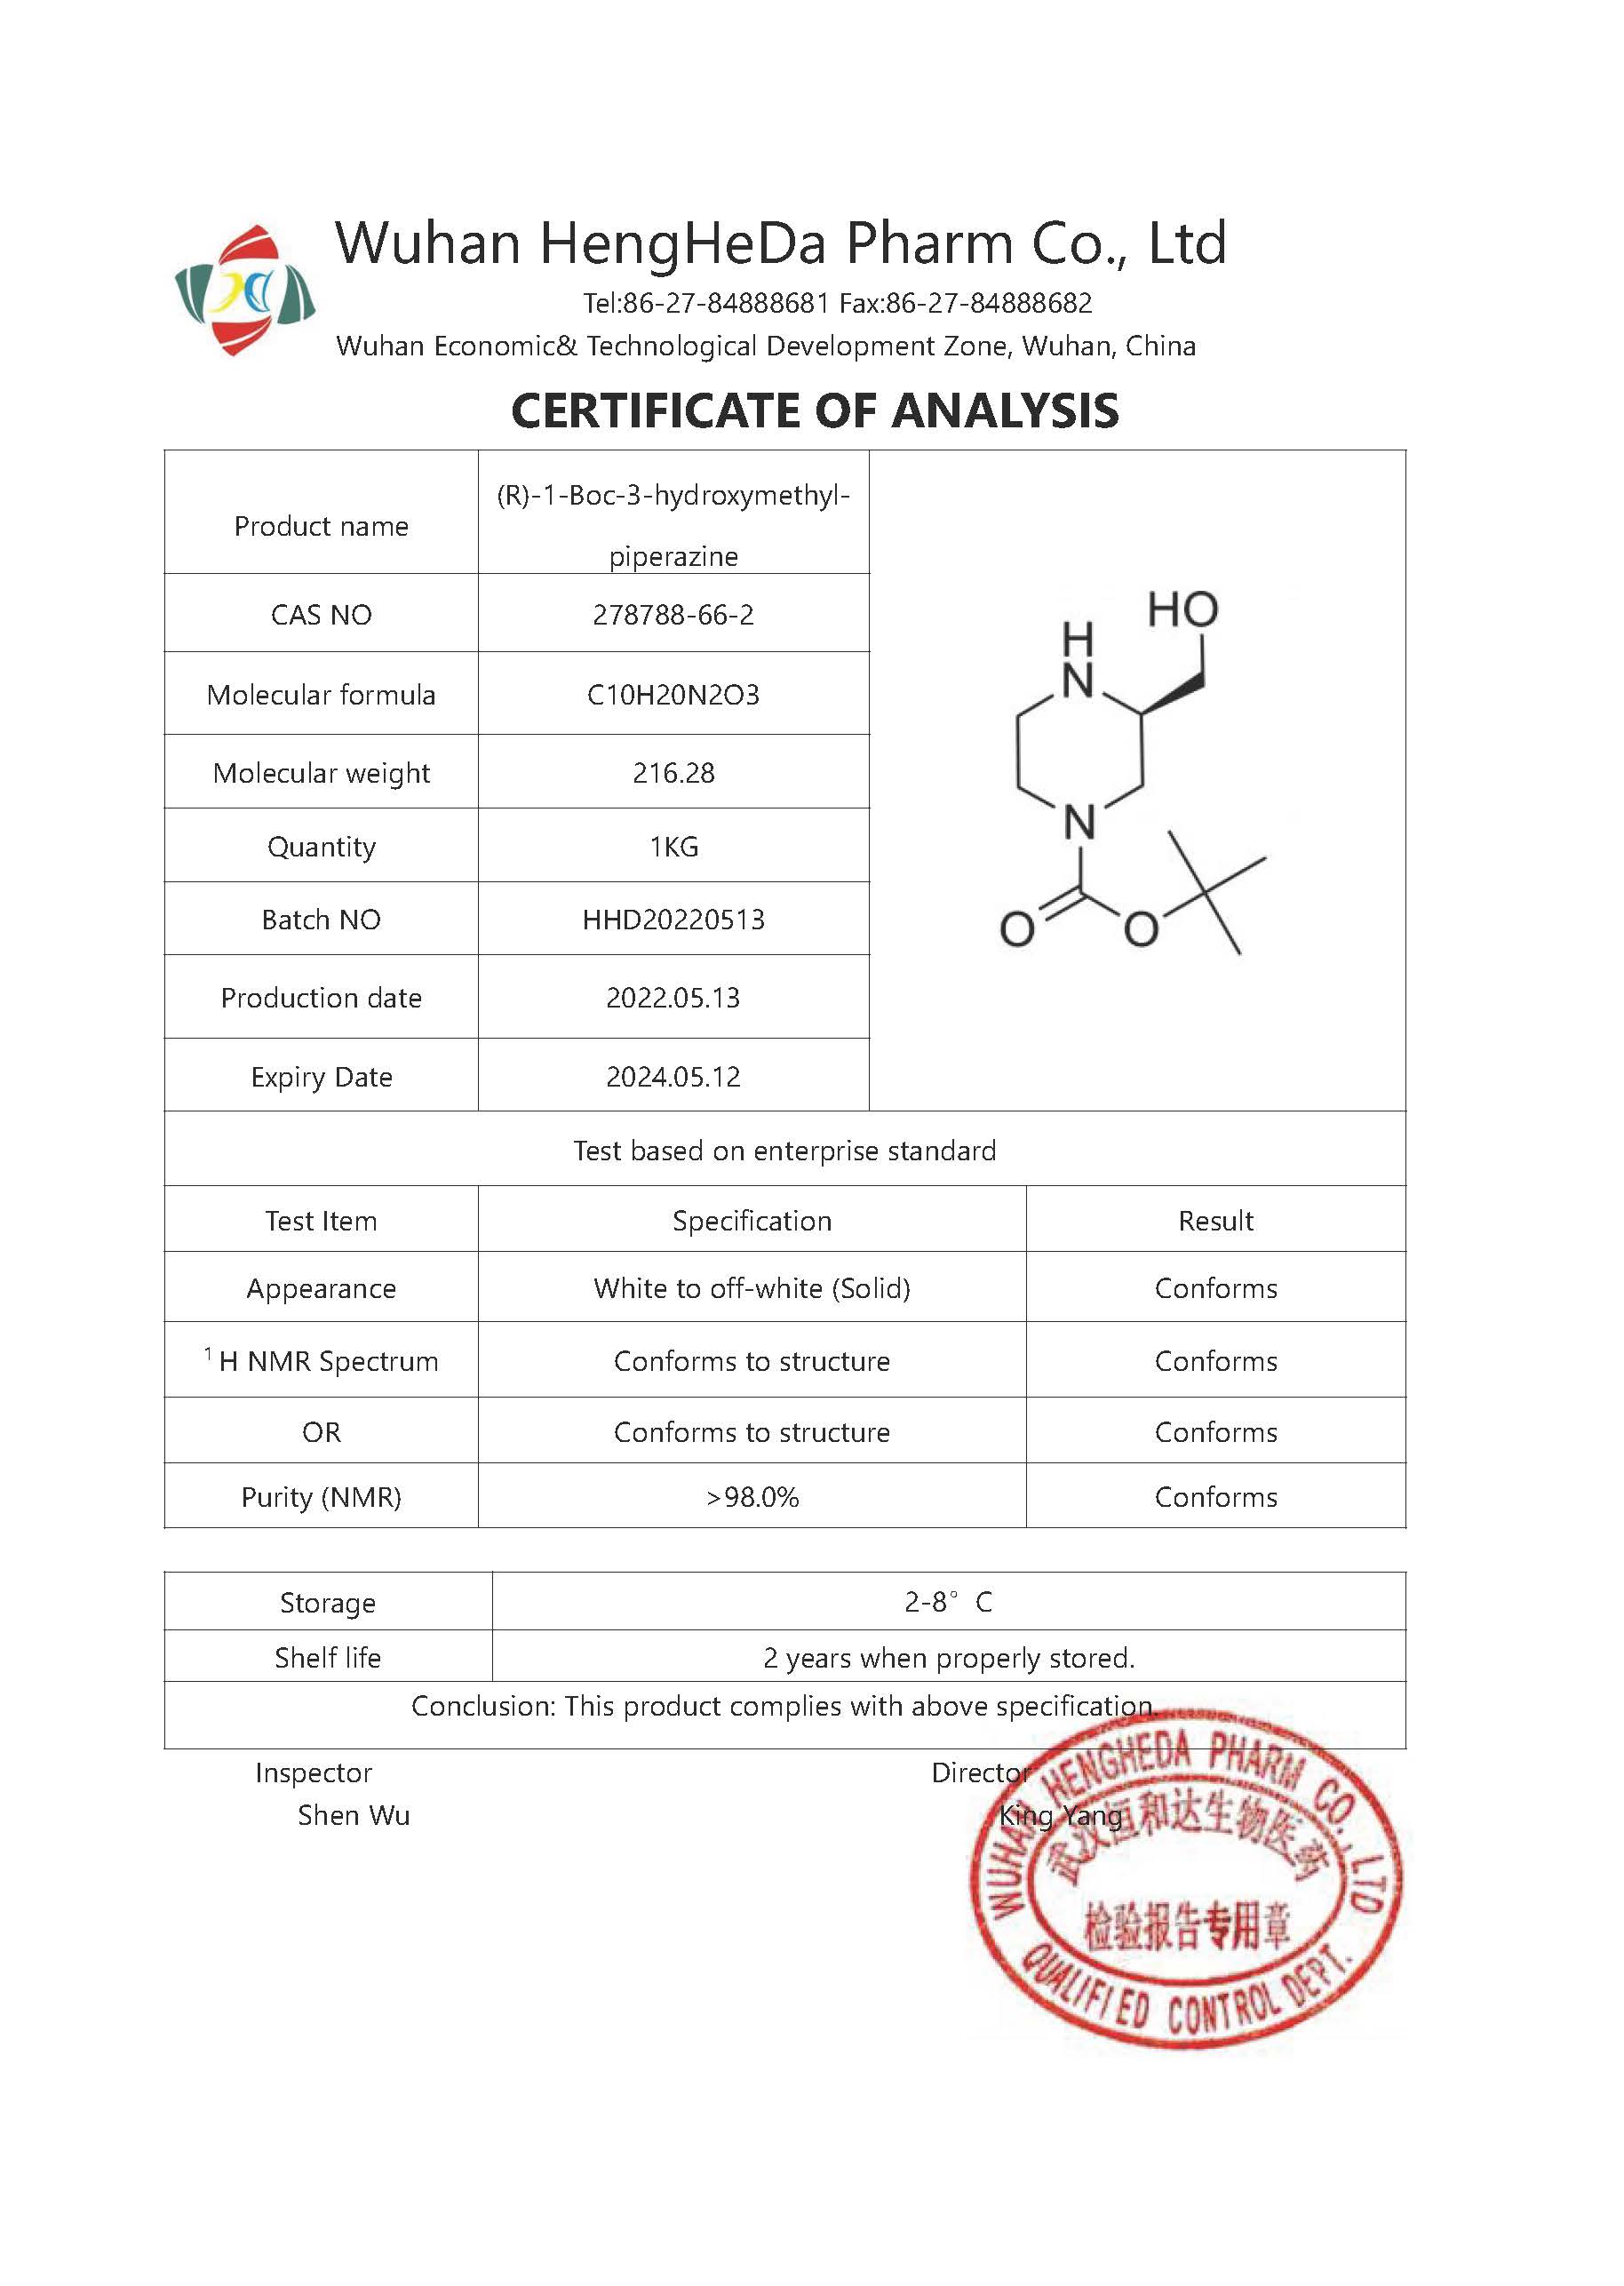 購入（R）-4-N-Boc-2-HydroxyMethyl-piperazine CAS 278788-66-2,（R）-4-N-Boc-2-HydroxyMethyl-piperazine CAS 278788-66-2価格,（R）-4-N-Boc-2-HydroxyMethyl-piperazine CAS 278788-66-2ブランド,（R）-4-N-Boc-2-HydroxyMethyl-piperazine CAS 278788-66-2メーカー,（R）-4-N-Boc-2-HydroxyMethyl-piperazine CAS 278788-66-2市場,（R）-4-N-Boc-2-HydroxyMethyl-piperazine CAS 278788-66-2会社